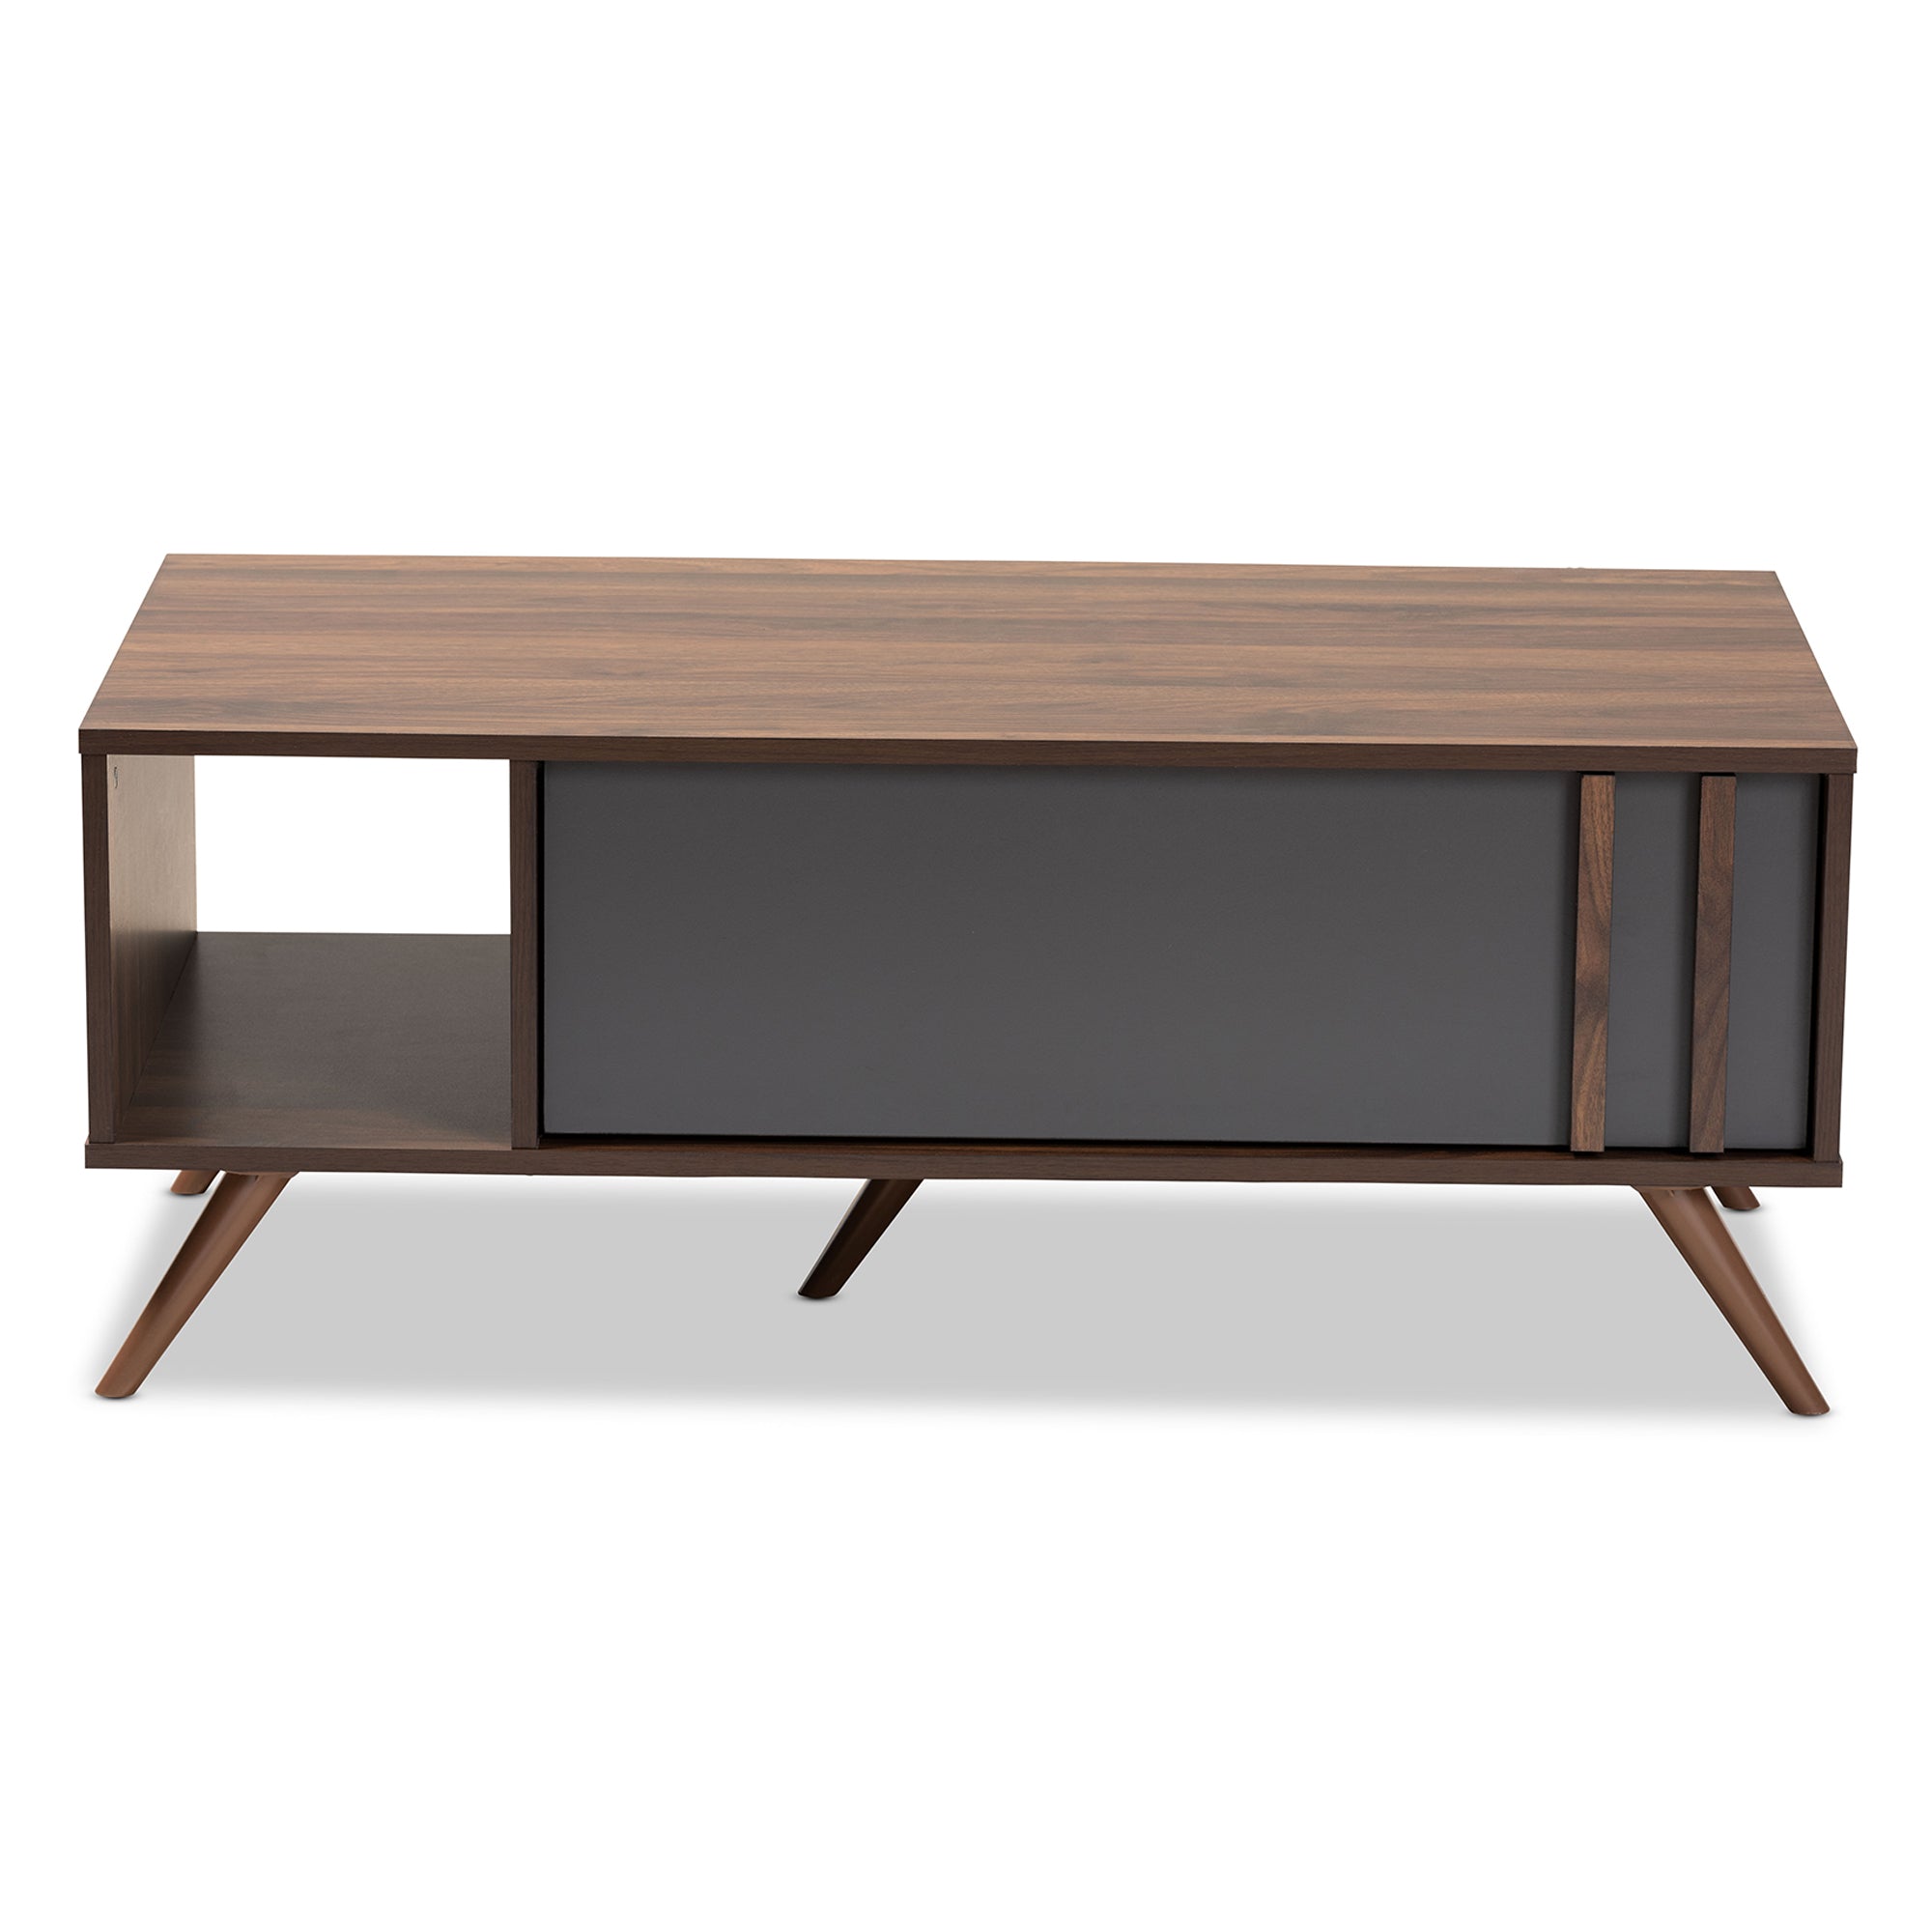 Naoki Modern Coffee Table Two-Tone 1-Drawer-Coffee Table-Baxton Studio - WI-Wall2Wall Furnishings